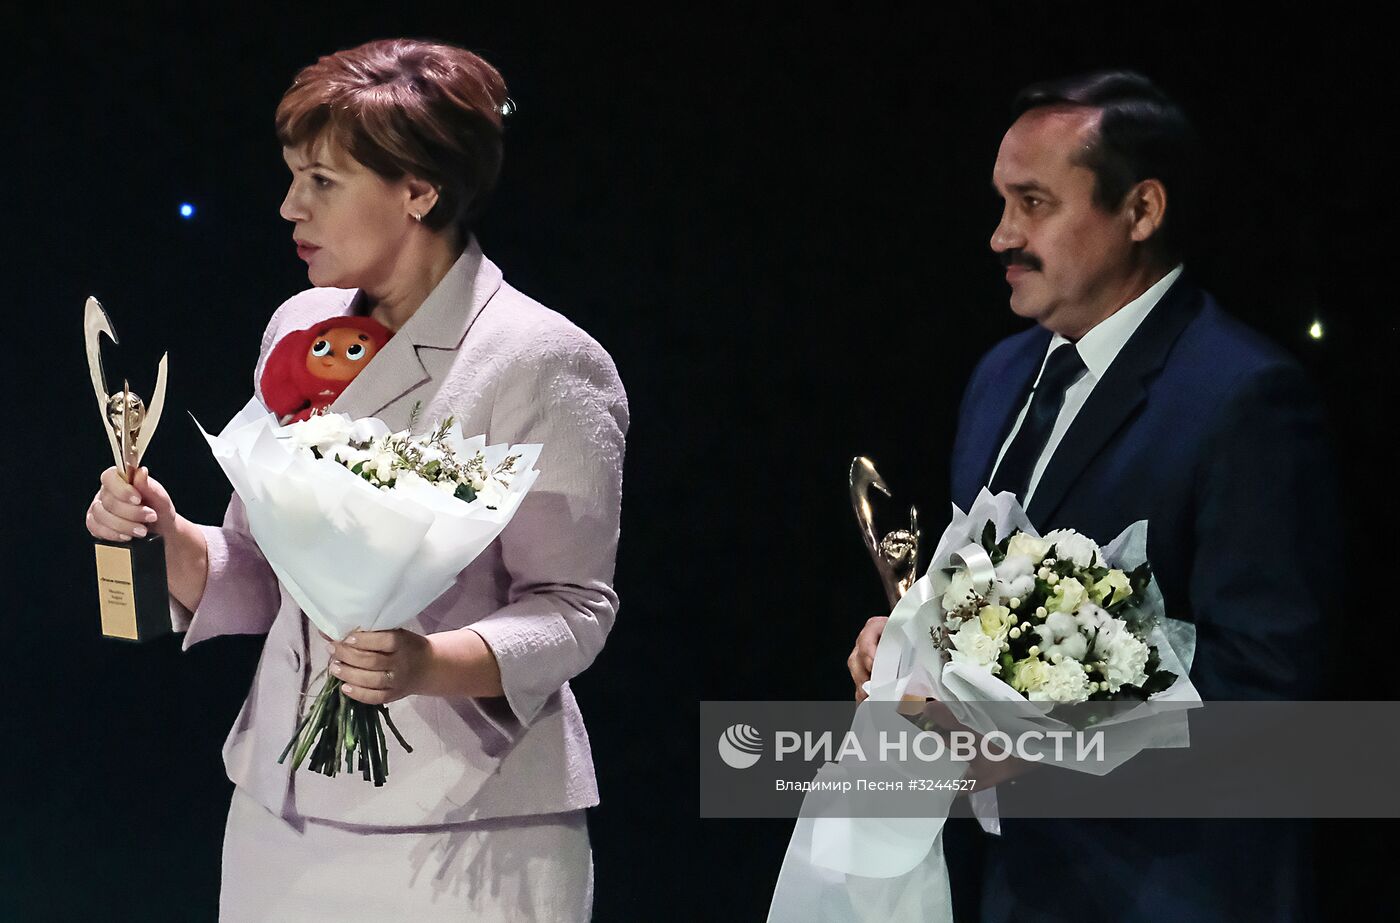 XII торжественная церемония награждения премией ПКР "Возвращение в жизнь"